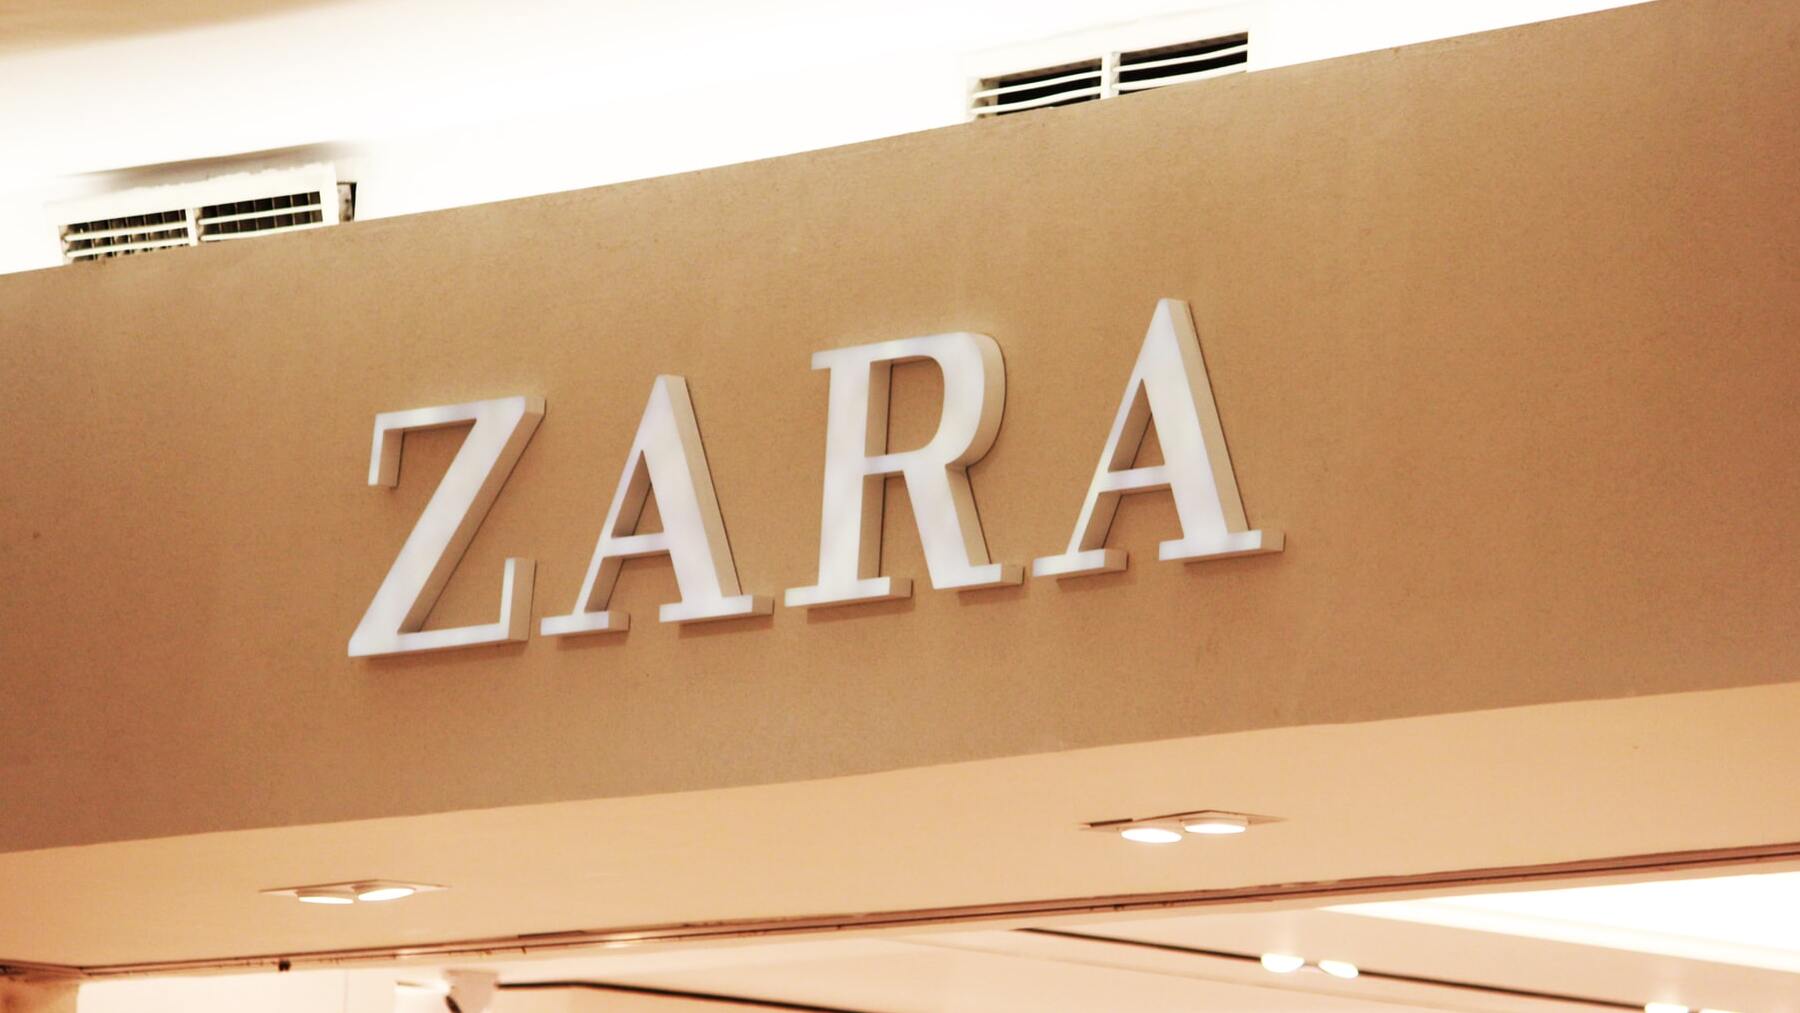 El lugar oculto del Zara de Bilbao que debes conocer